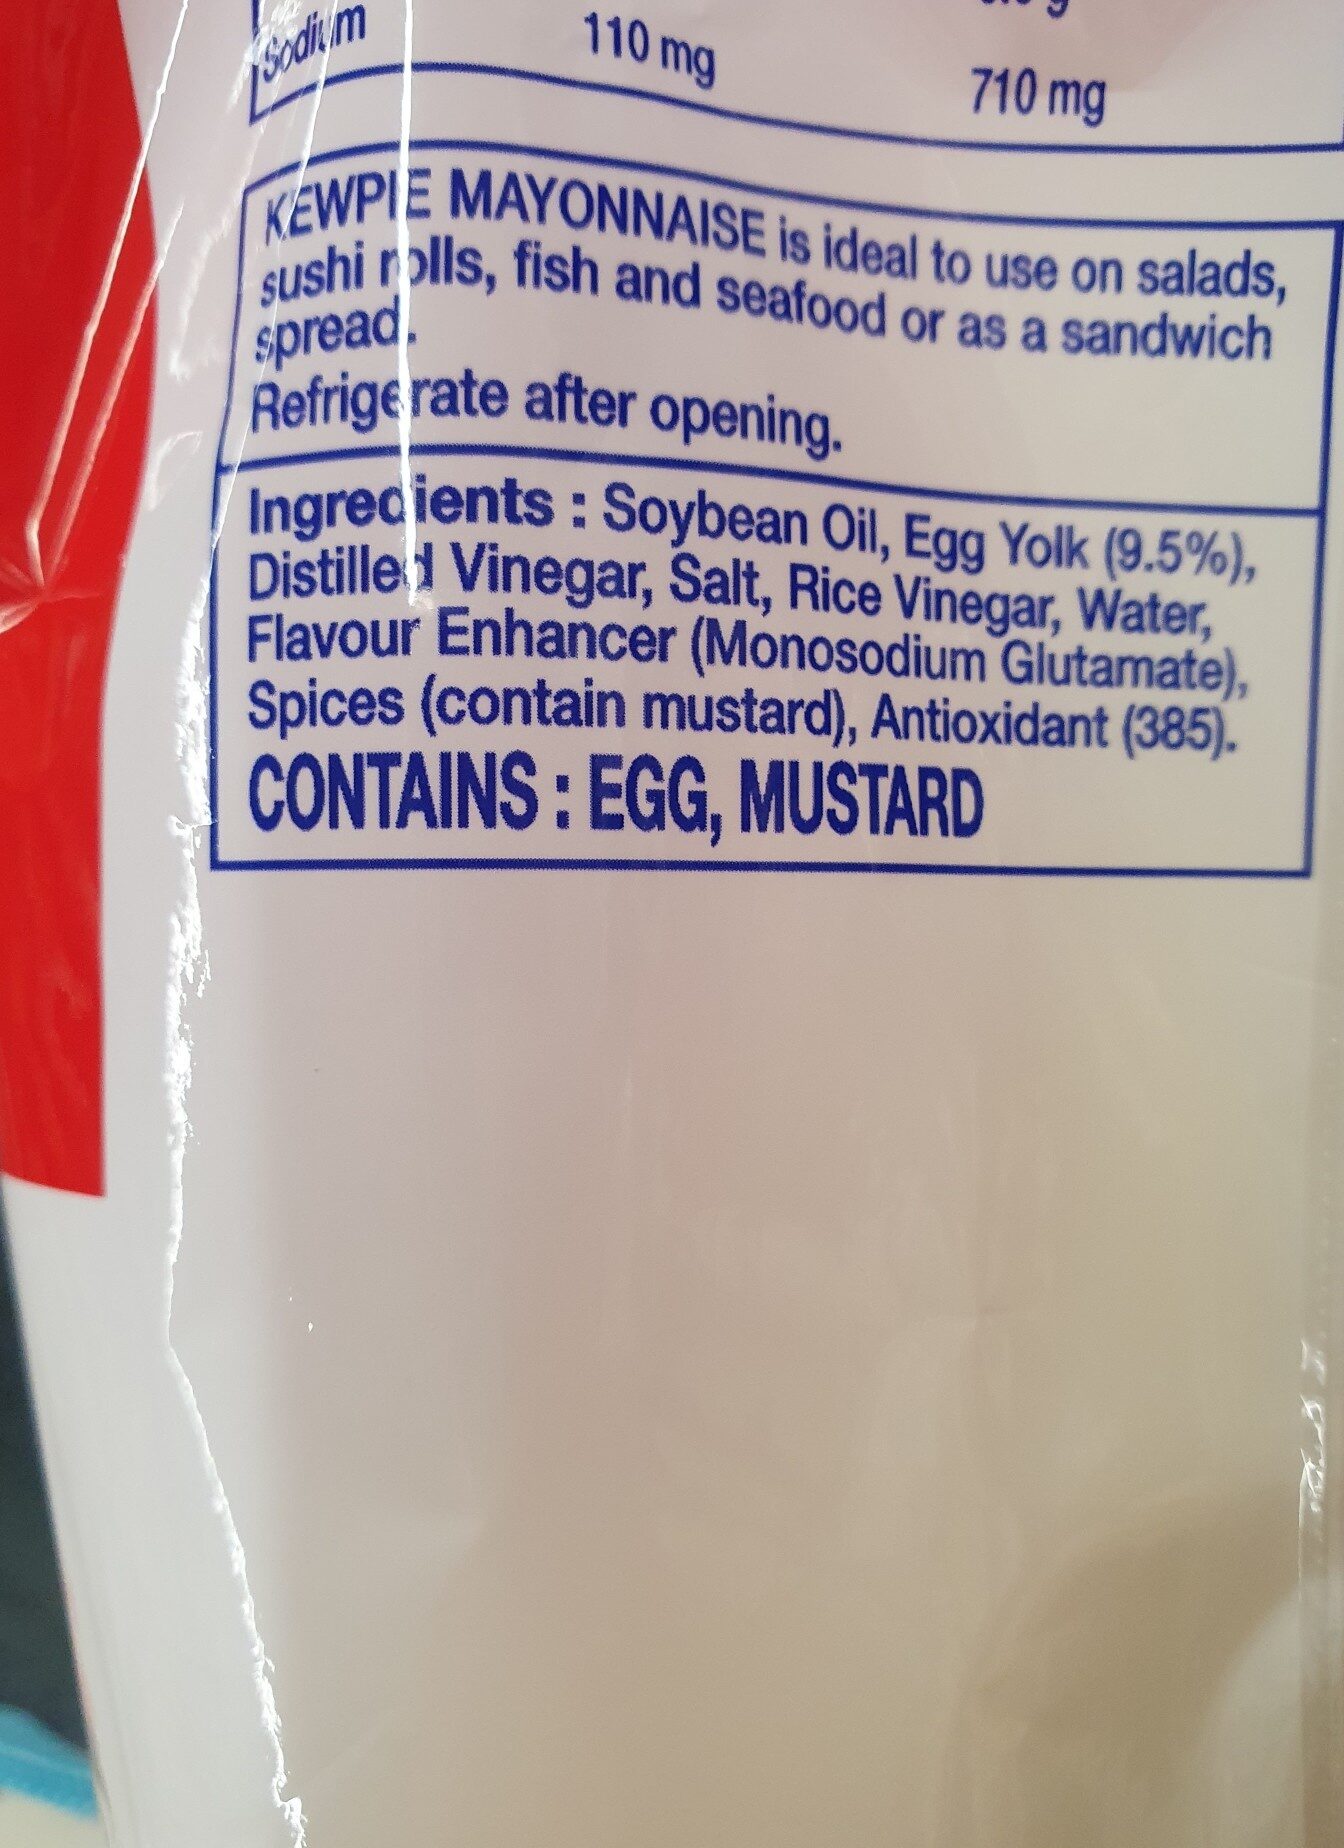 kewpie mayonnaise - Ingredients